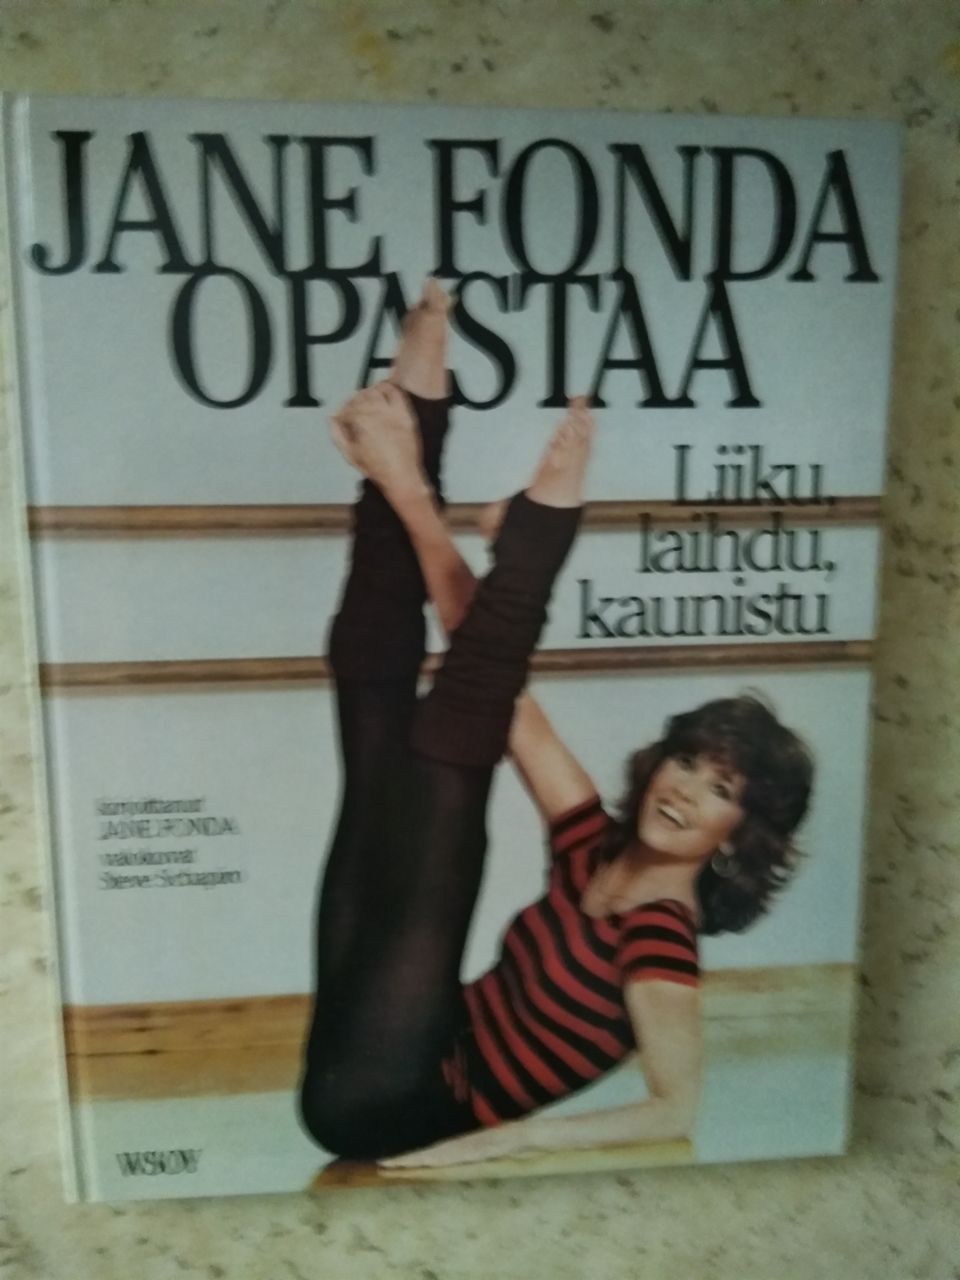 Jane Fonda opastaa kirja